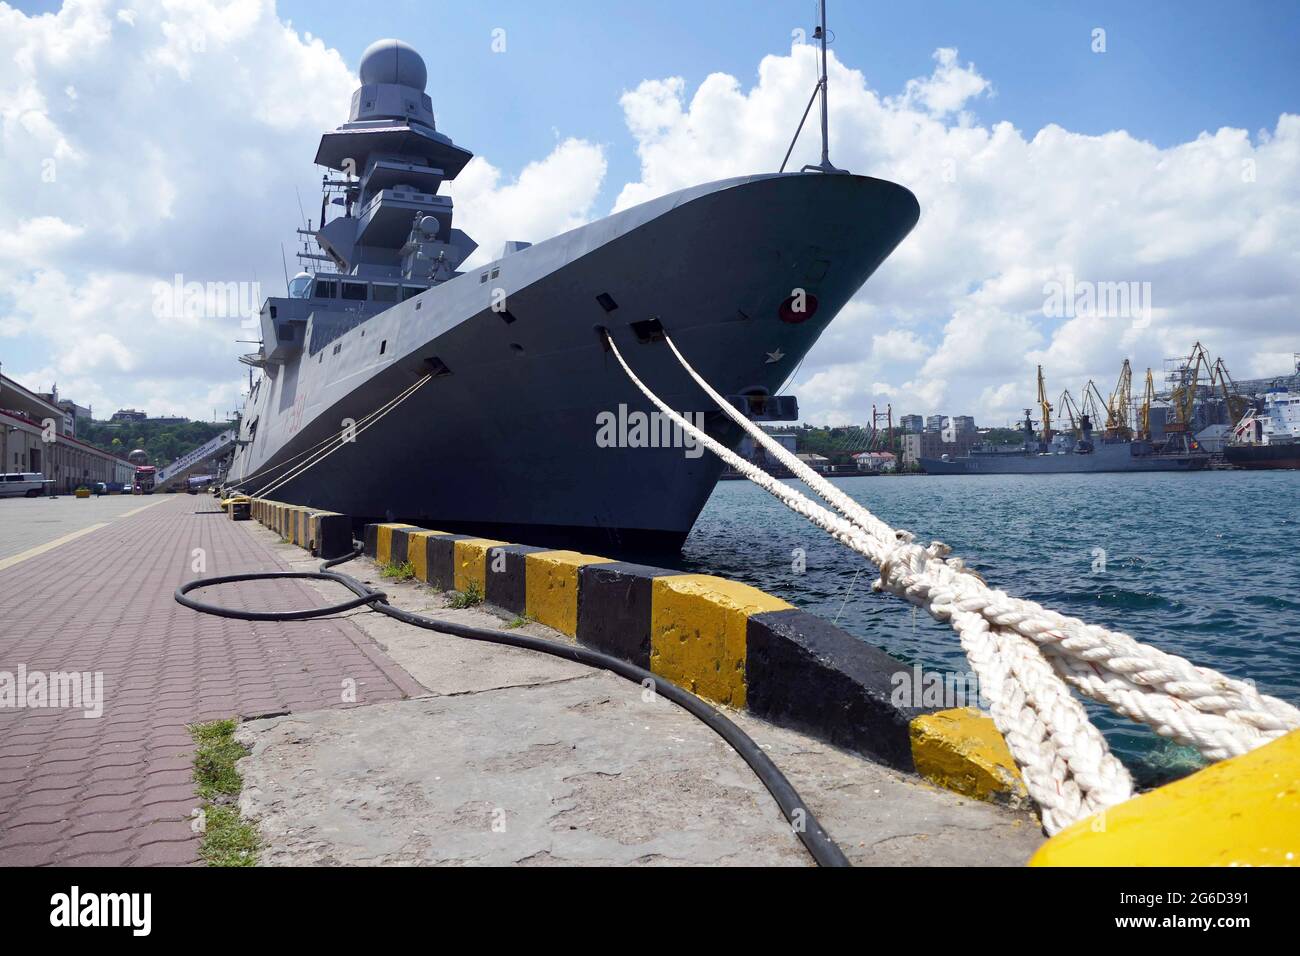 No Exclusivo: ODESA, UCRANIA - 3 DE JULIO de 2021 - La fragata F591 de la Marina Italiana de Virginio Fasan está representada en el puerto de Odesa, al sur de Ucrania. Foto de stock